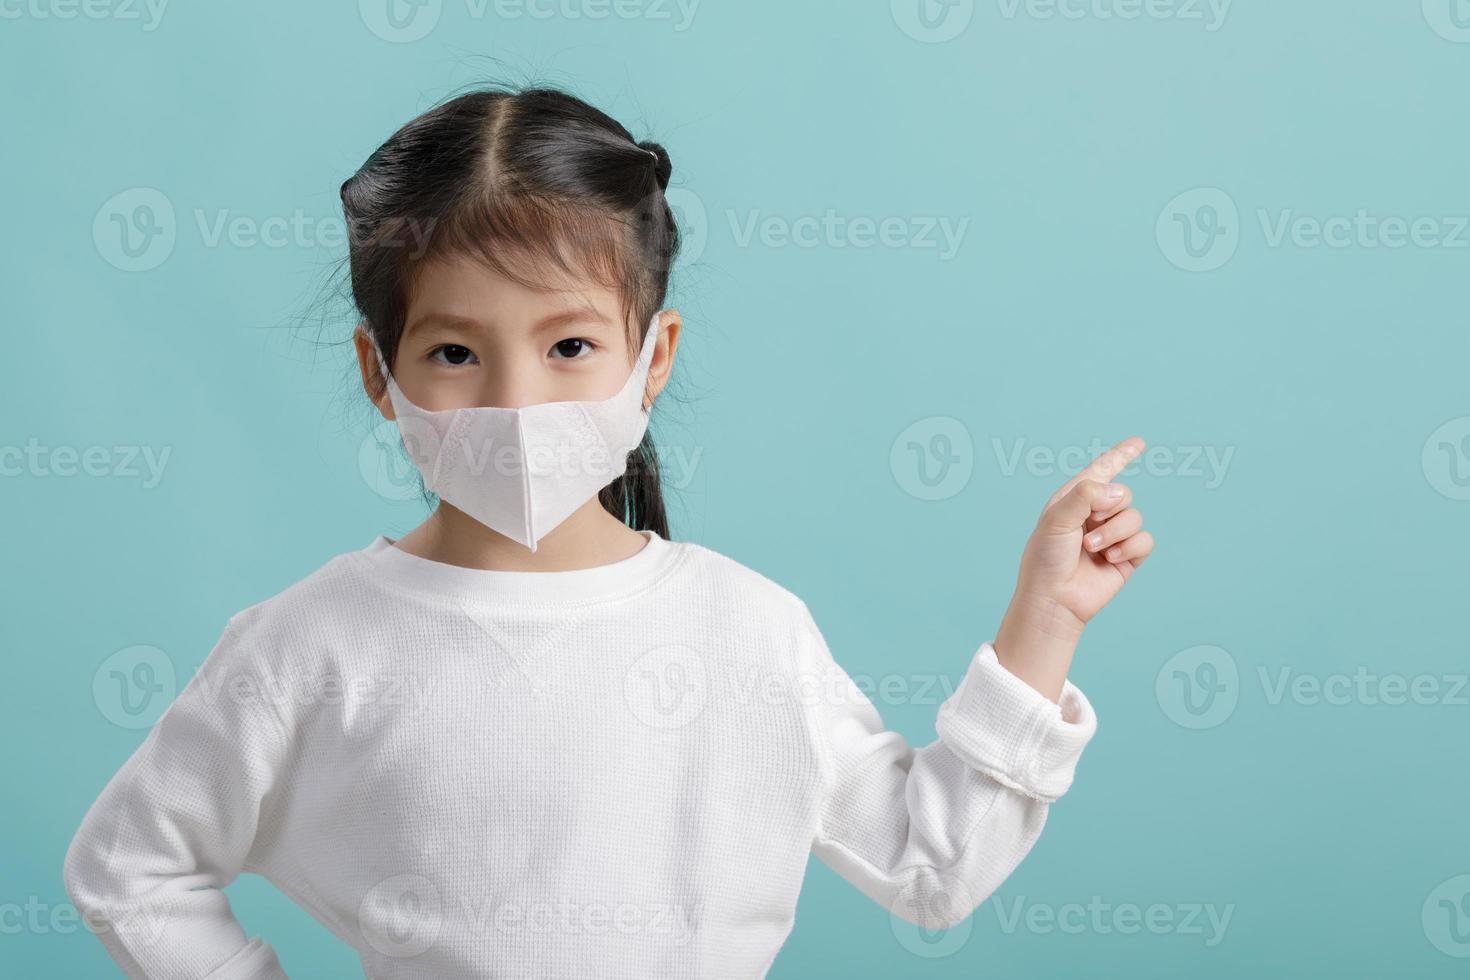 petite fille asiatique portant un masque respiratoire pour protéger l'épidémie de coronavirus et pointant la main vers un fond blanc, nouveau virus covid-19 du concept de wuhan chine, espace vide isolé sur bleu photo